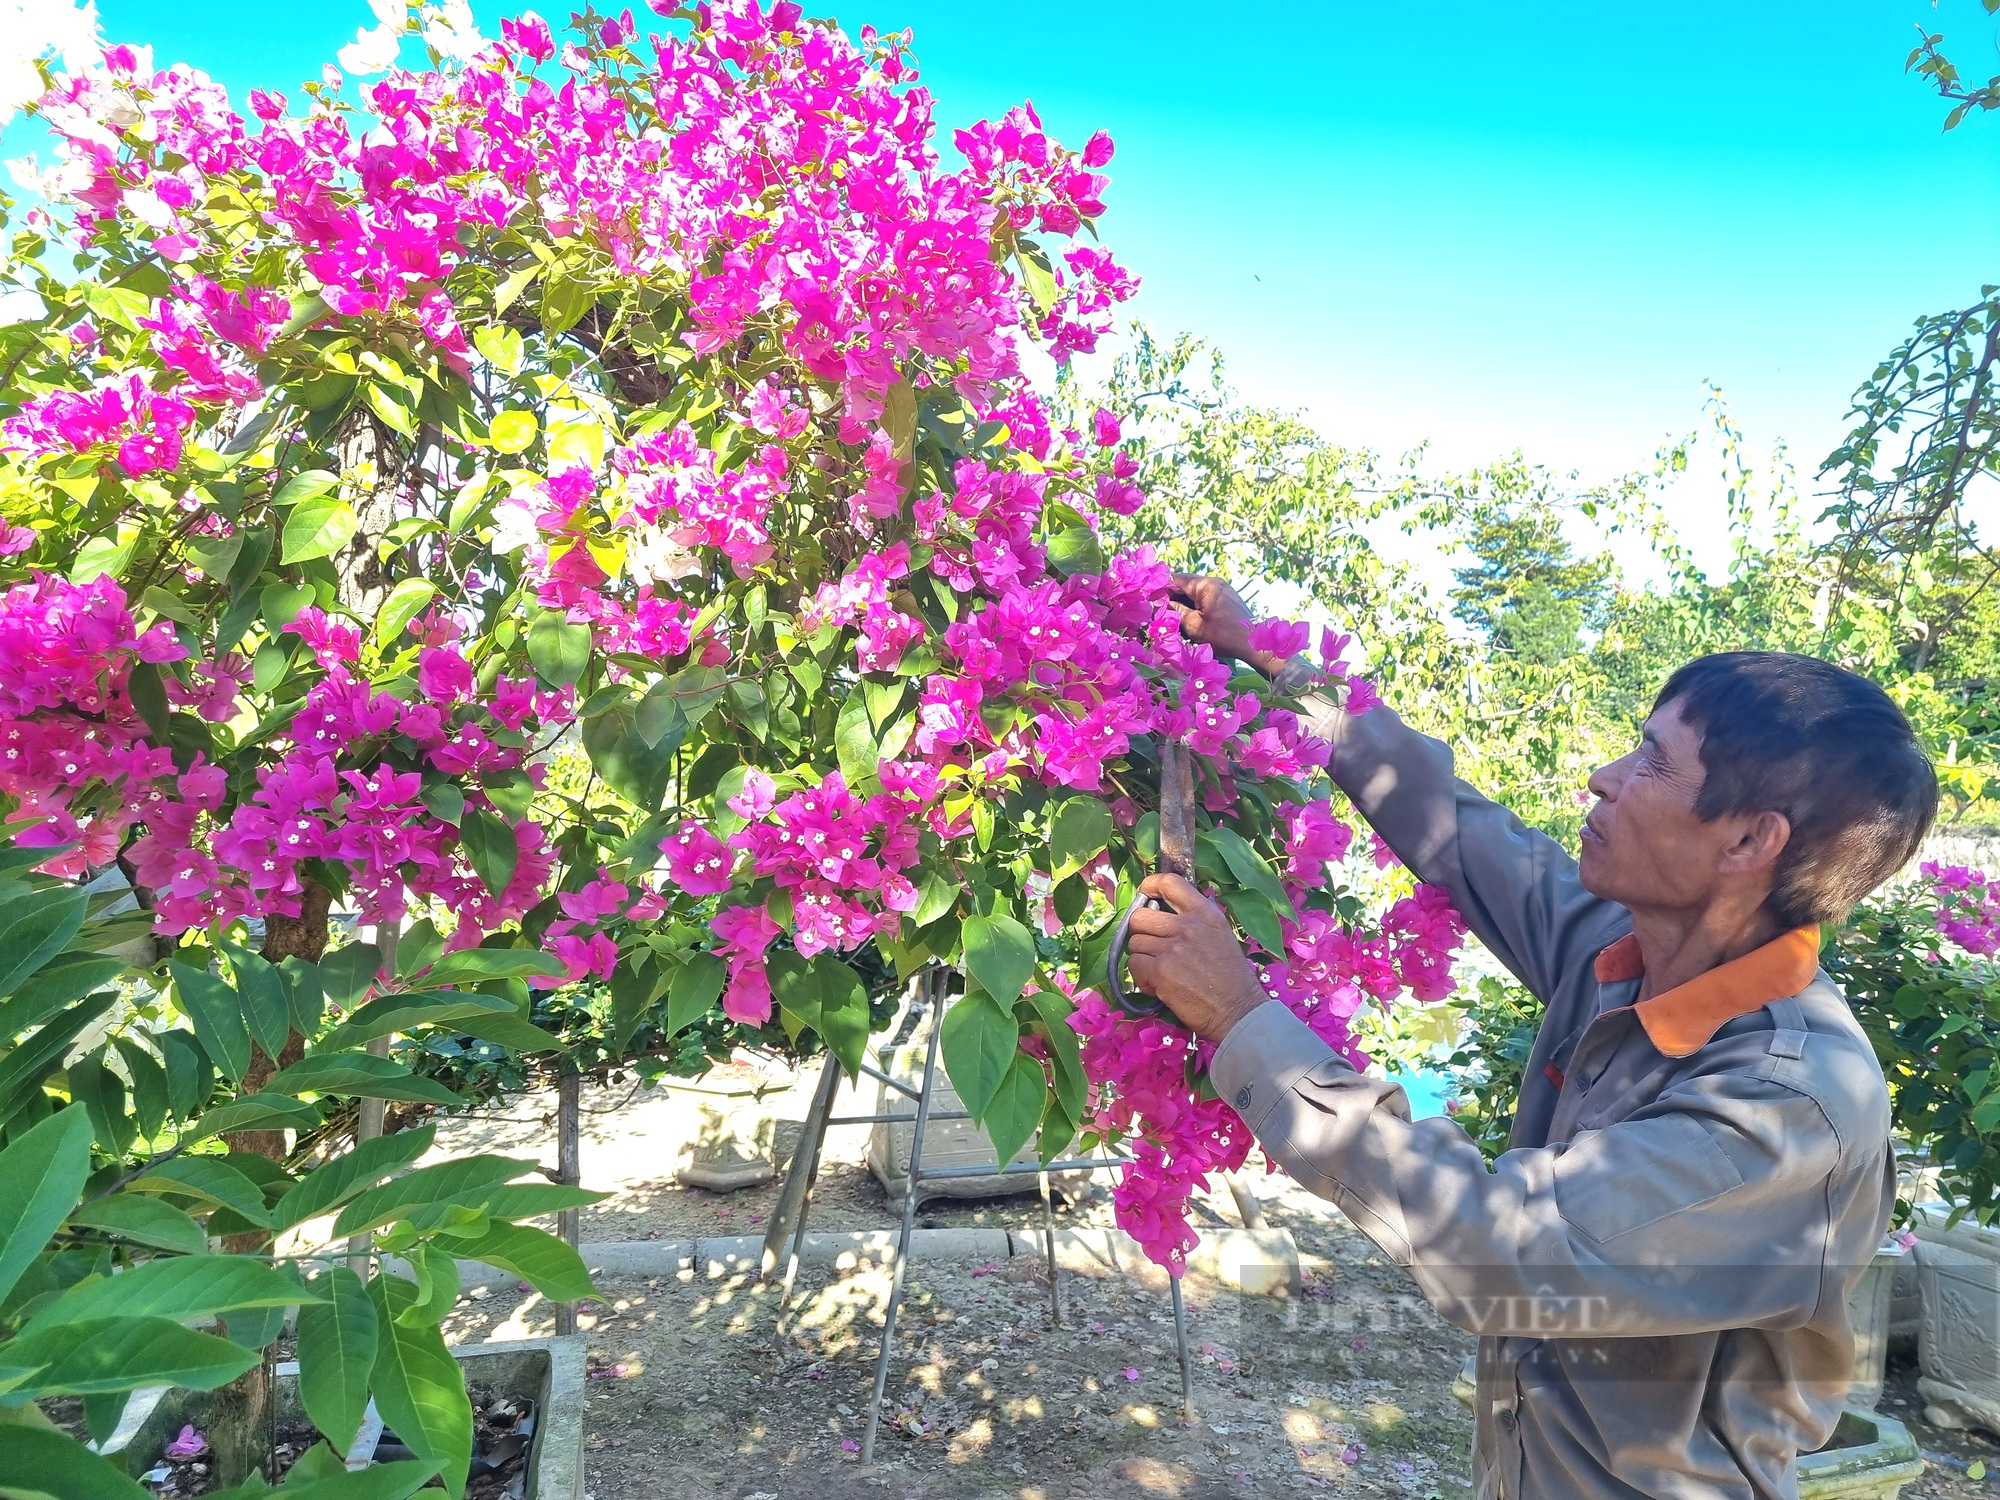 Cận cảnh cây hoa giấy dáng long “độc nhất vô nhị” trị giá hơn nửa tỷ đồng ở tỉnh Ninh Bình - Ảnh 8.